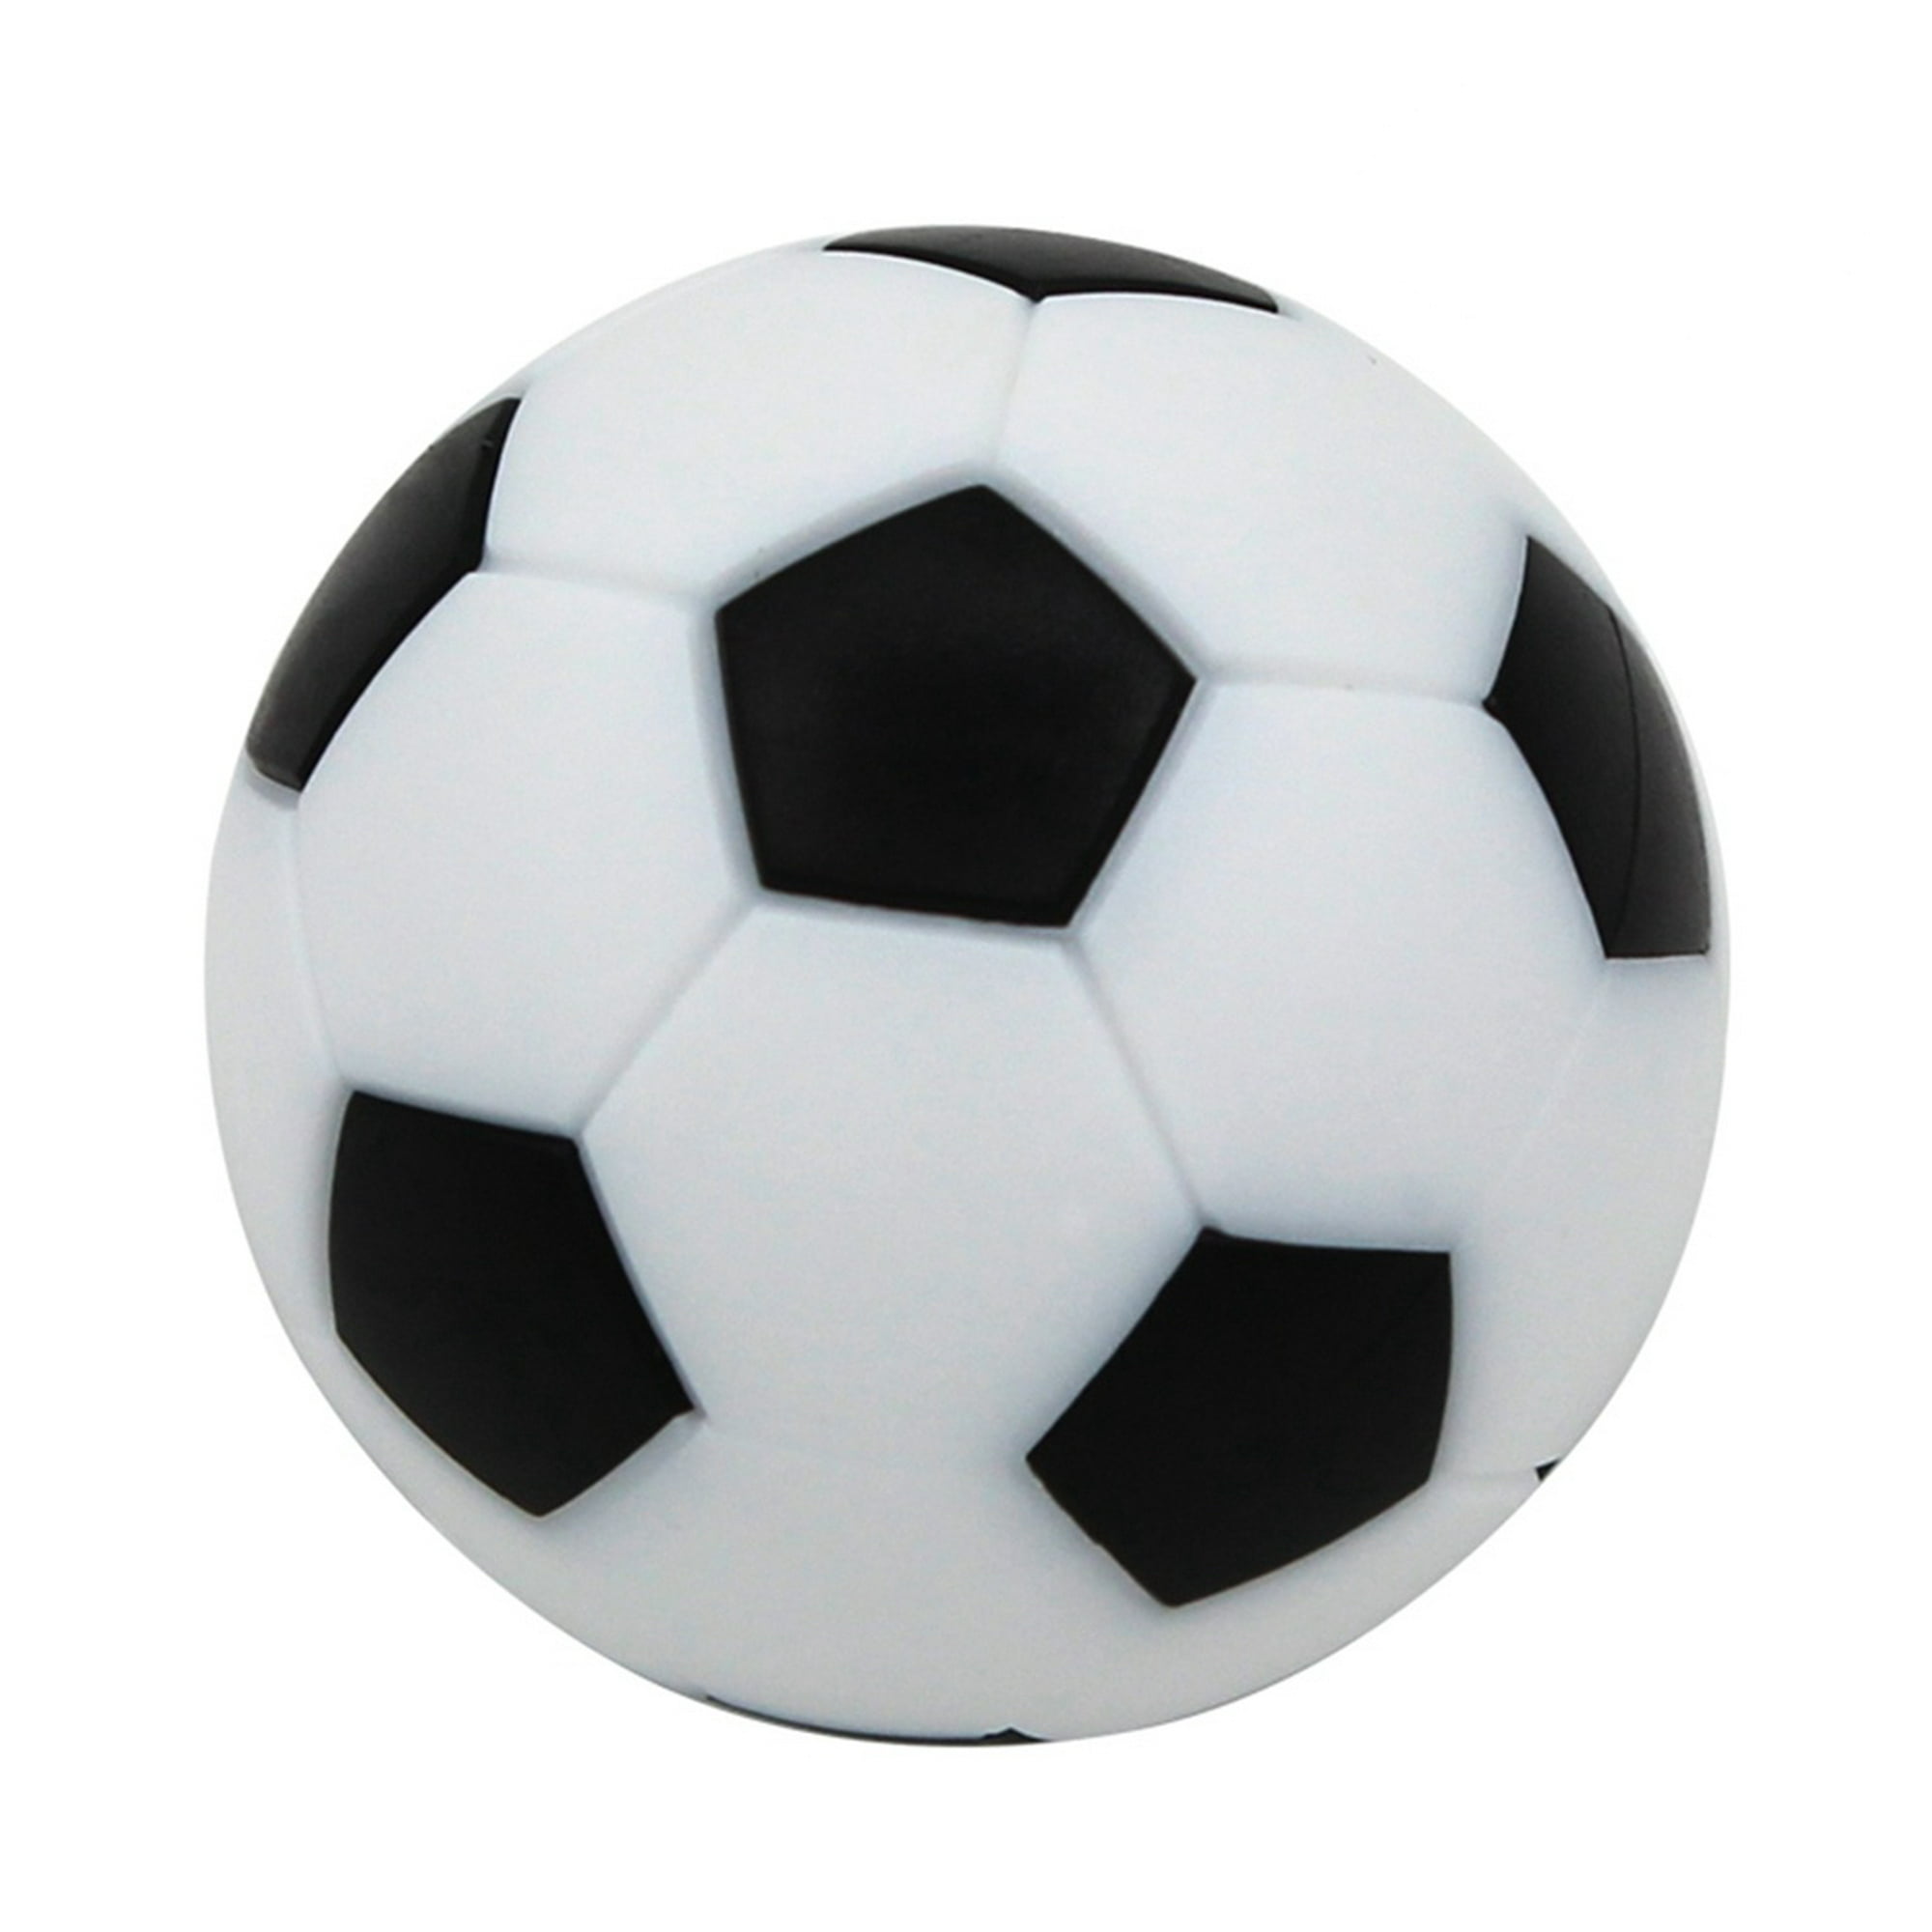 6PCS 32mm bolas de futbolín bolas para futbolín juego de mesa Mini balones  de fútbol en blanco y negro futbolín futbolín de futbolín reemplazos